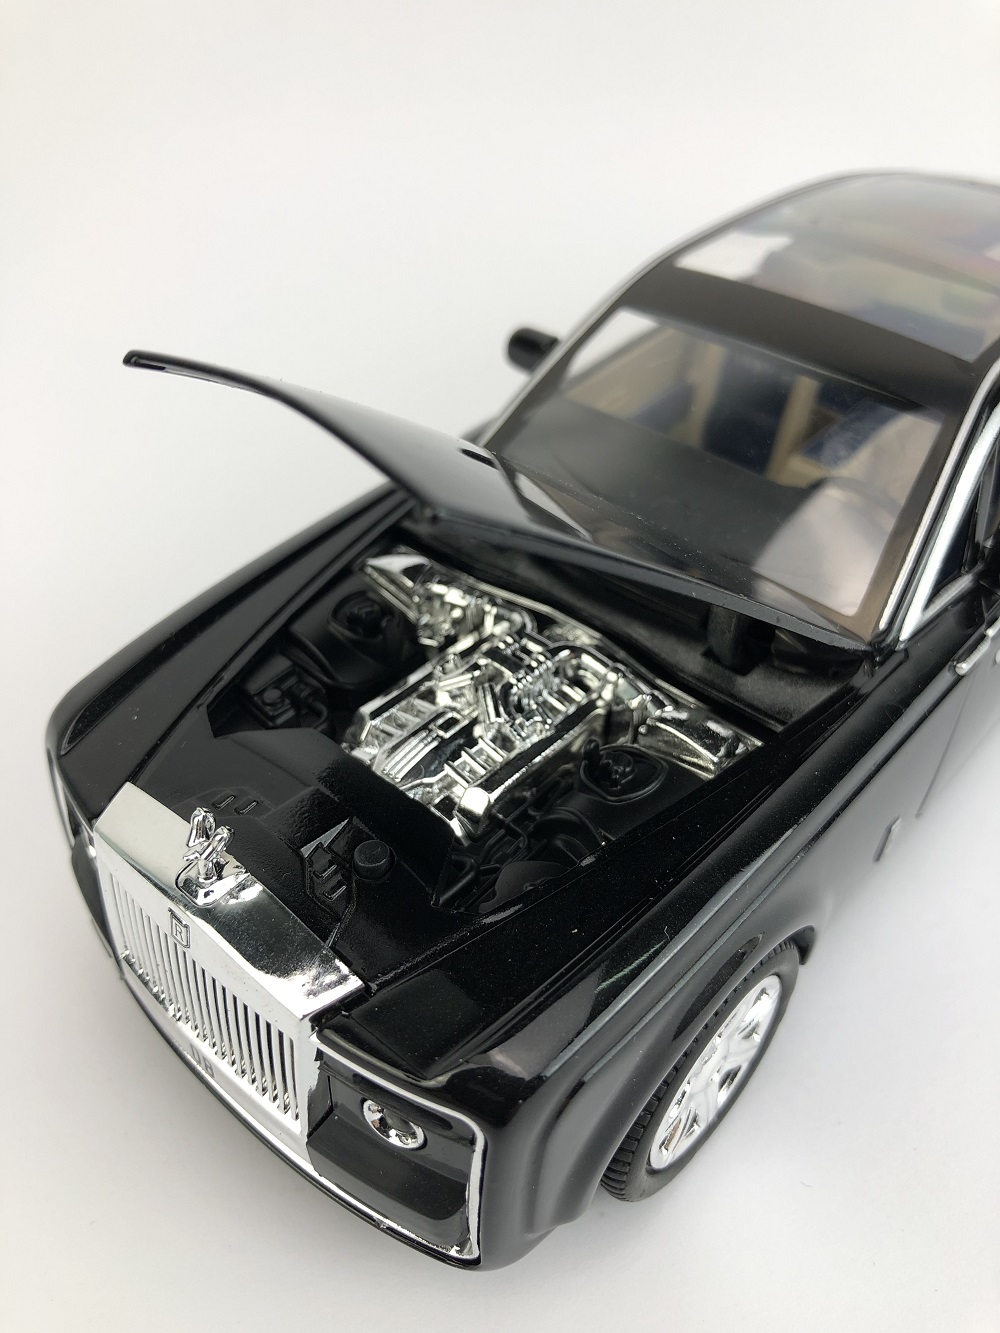 Xe mô hình Rolls Royce Sweptail tỉ lệ 1/24 xlg màu xanh đen, dùng để trang trí nội thất hoặc làm quà tặng sinh nhật, noel